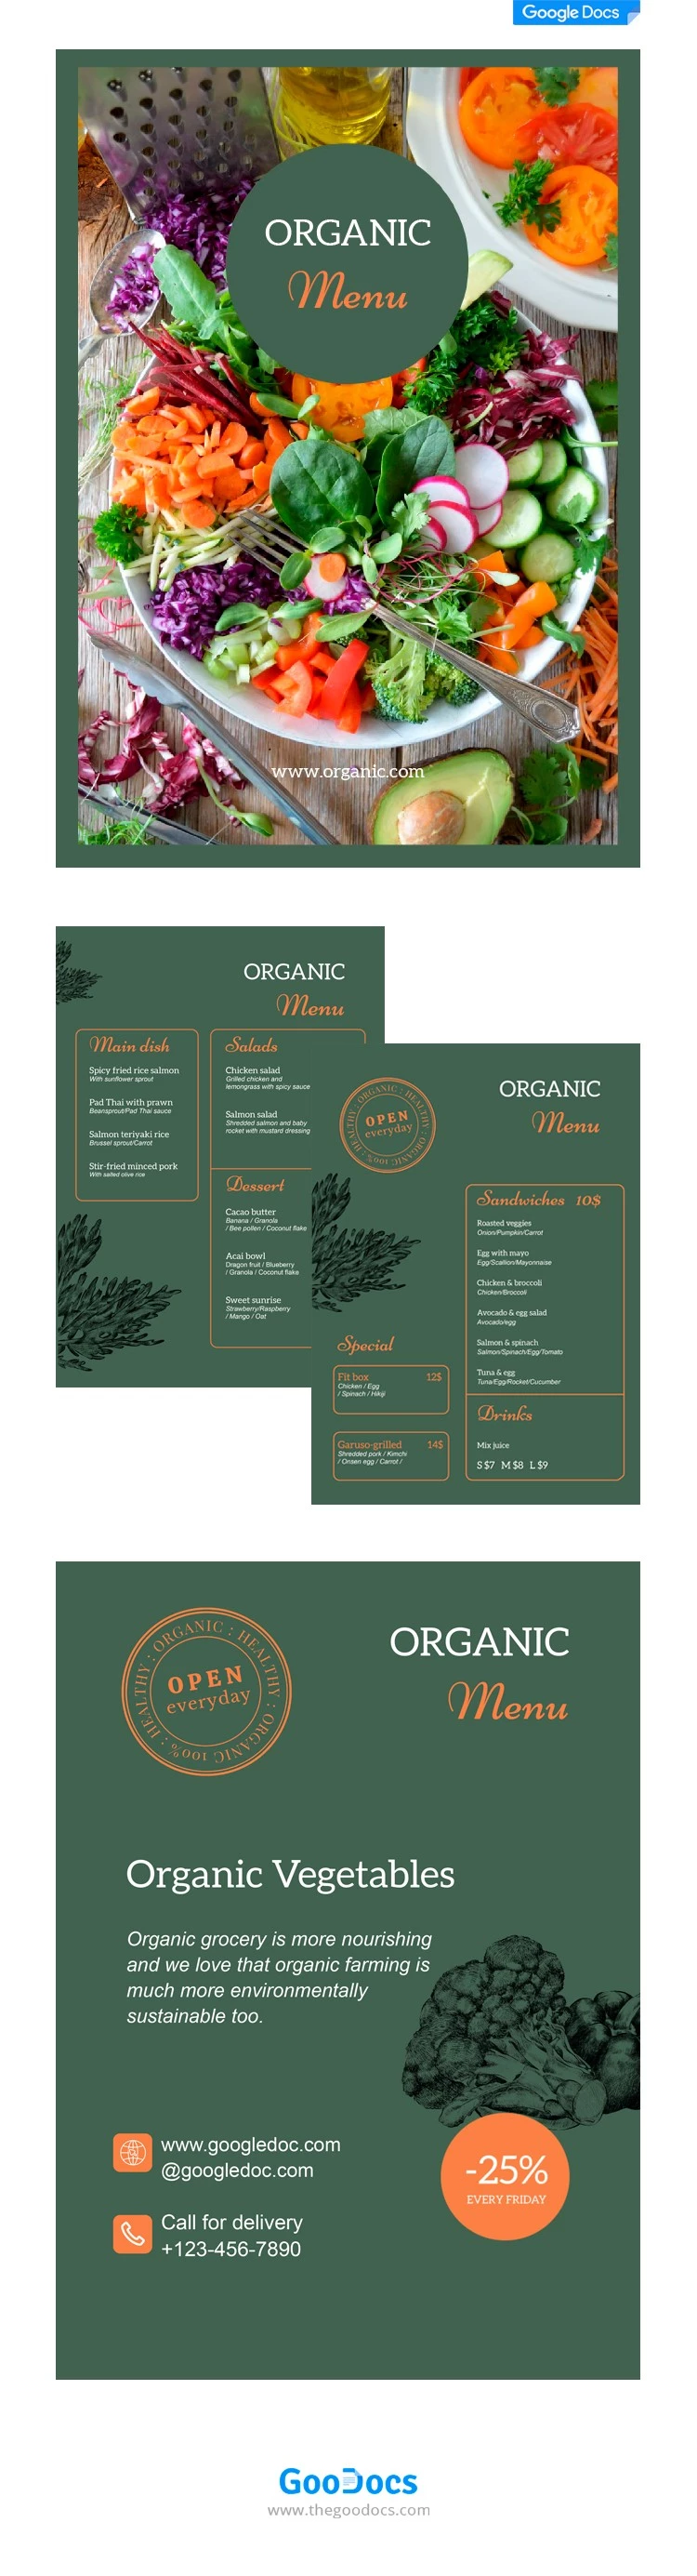 Cardápio de comida orgânica - free Google Docs Template - 10062112